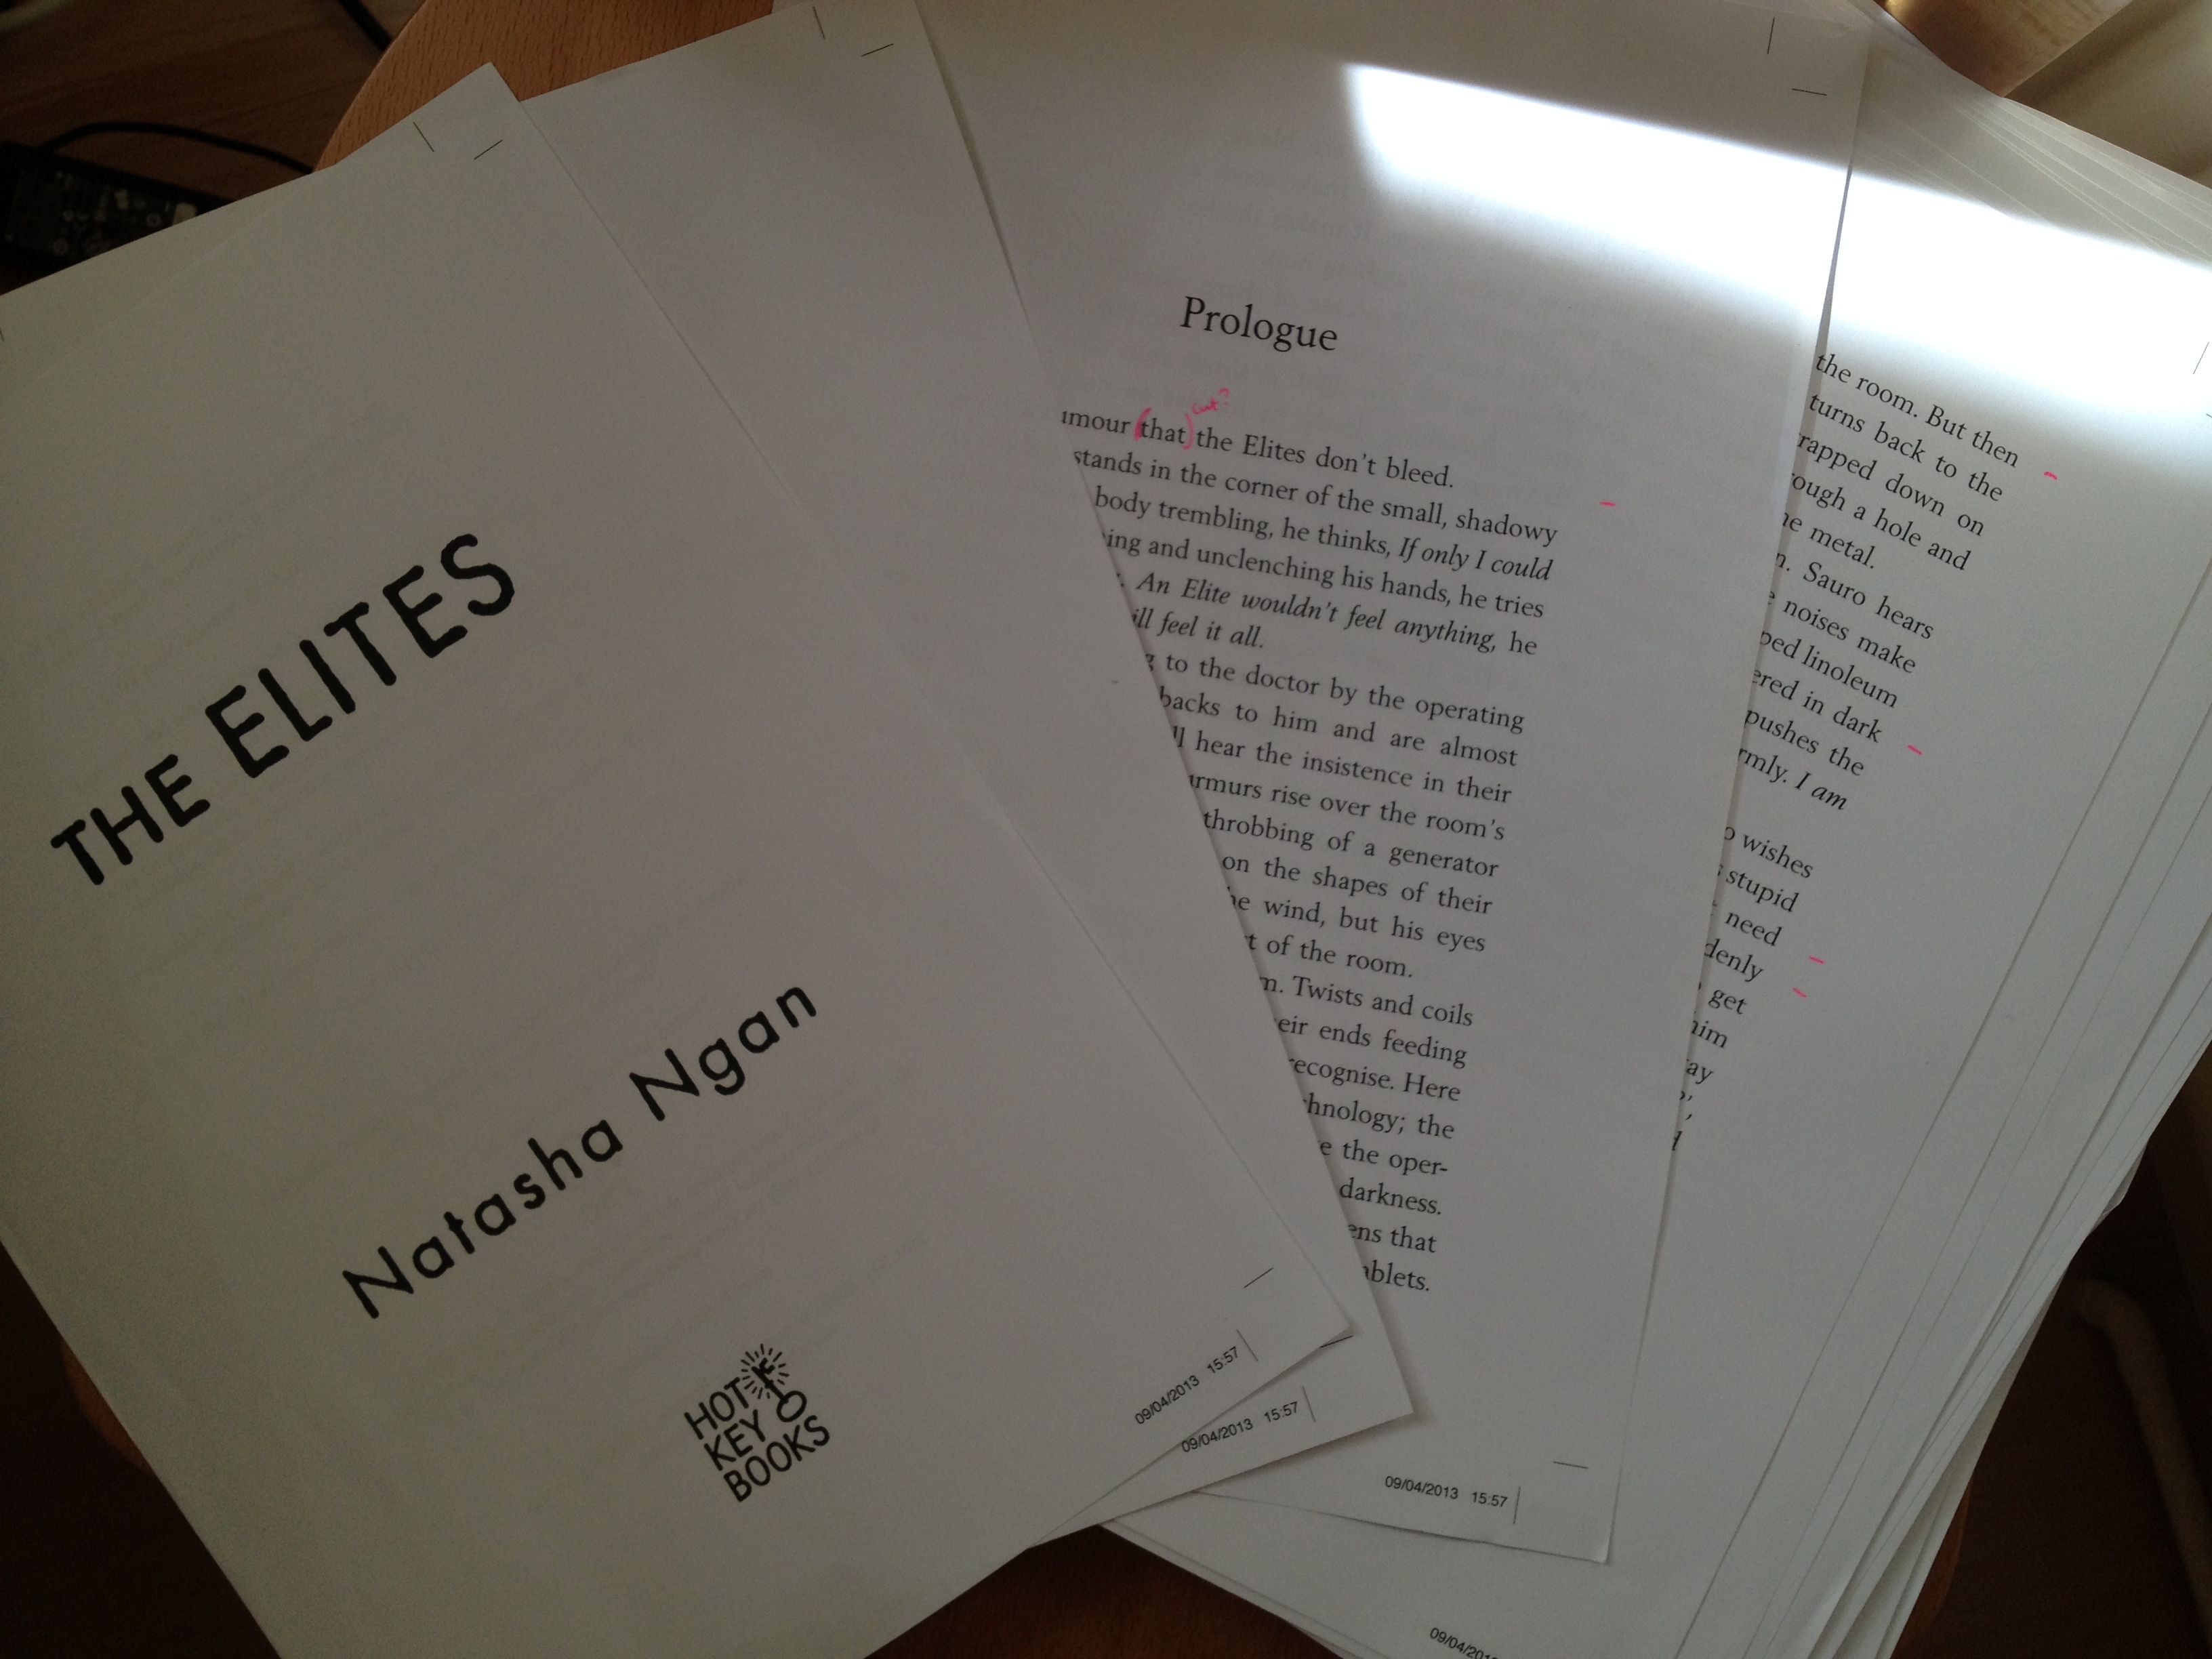 The Elites by Natasha Ngan page proofs